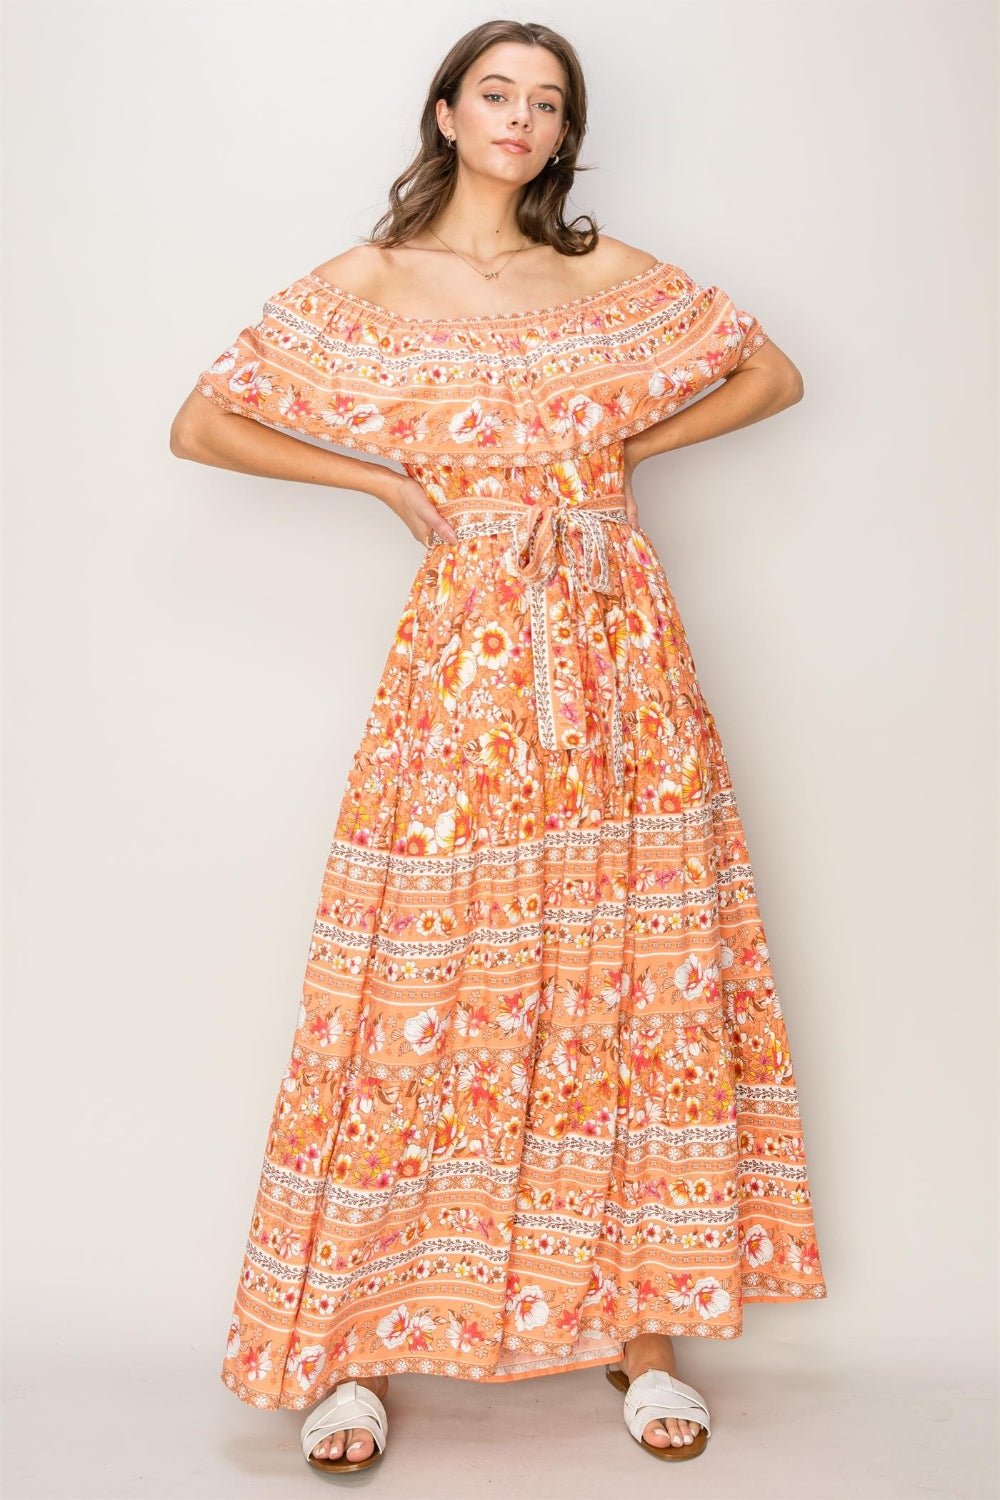 HYFVE Floral Off - Shoulder Tie Front Maxi Dress - Happily Ever Atchison Shop Co.